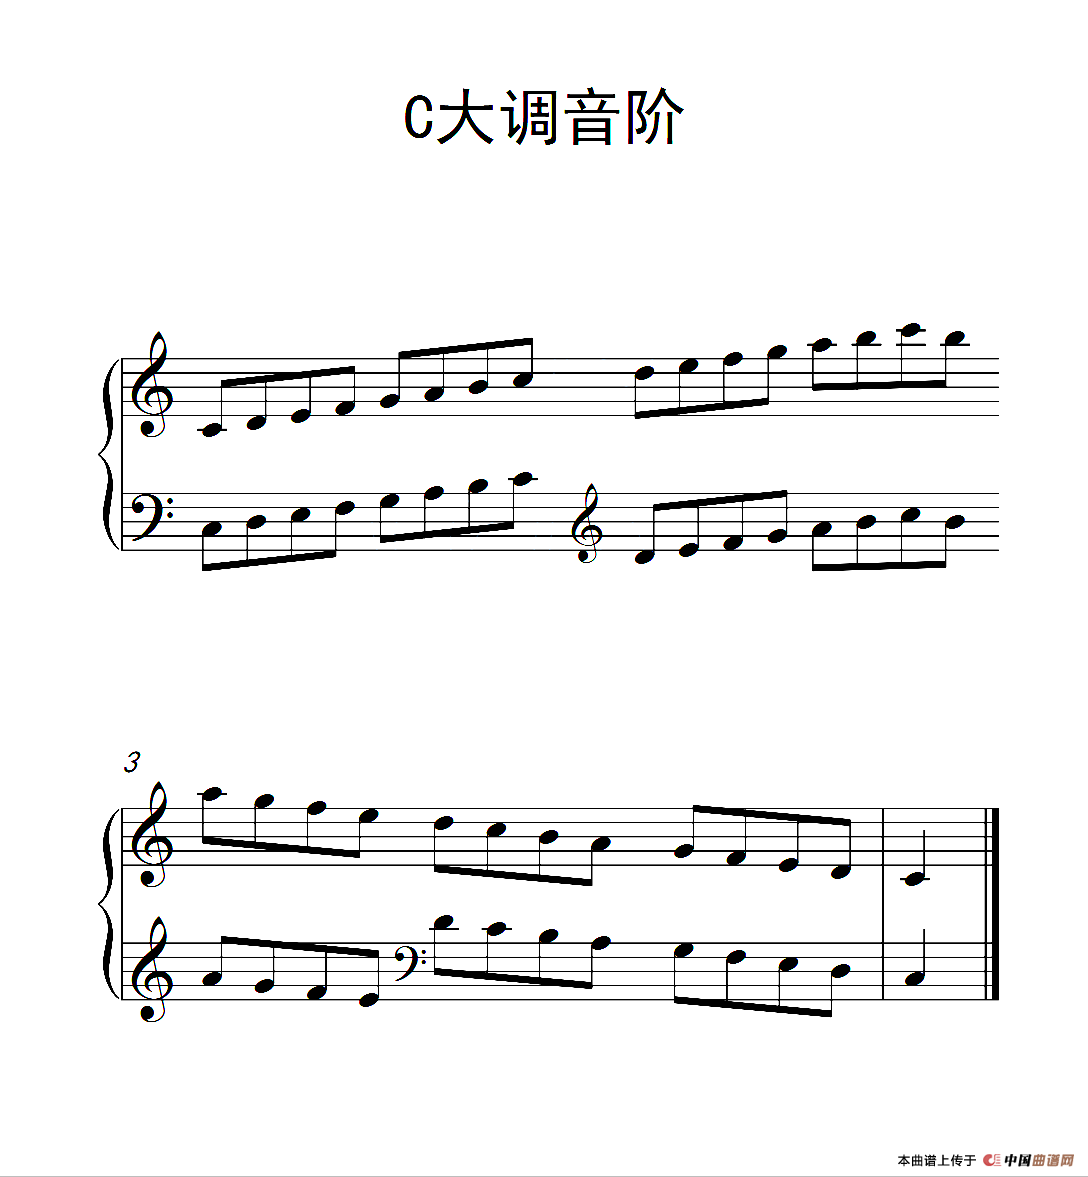 第一级 C大调音阶（中国音乐学院钢琴考级作品